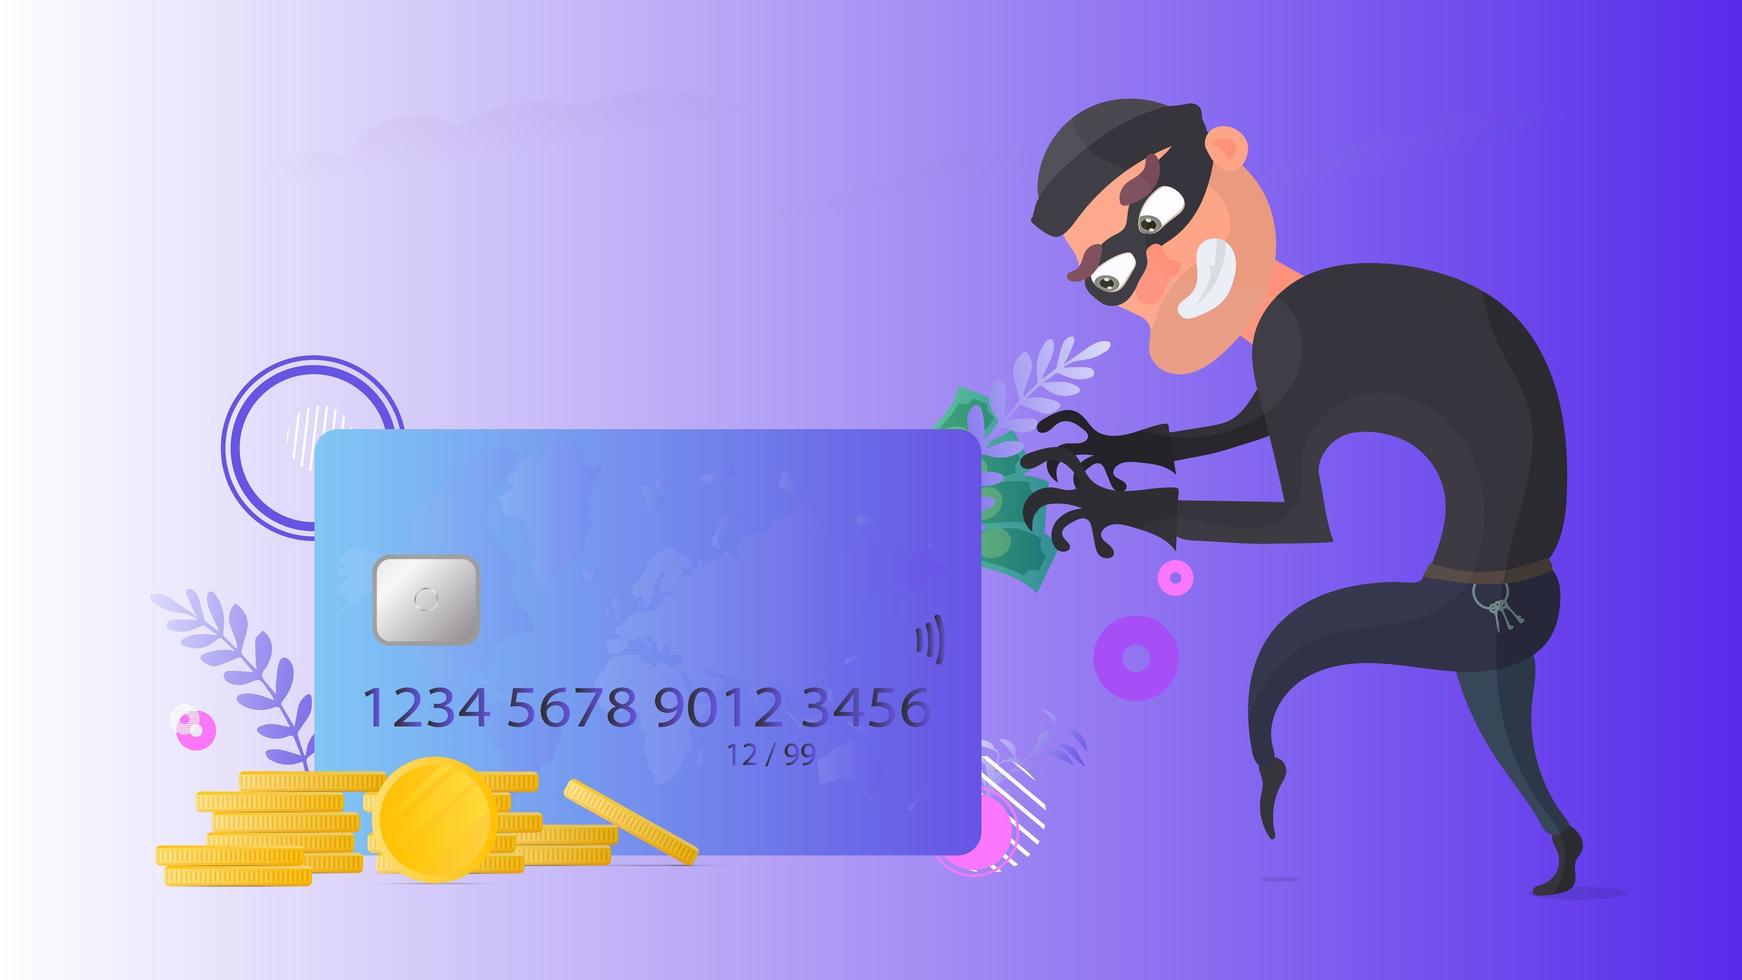 um ladrão está tentando roubar um cartão de crédito. cartão de crédito, moedas de ouro, dólares. conceito de segurança online. vetor. vetor